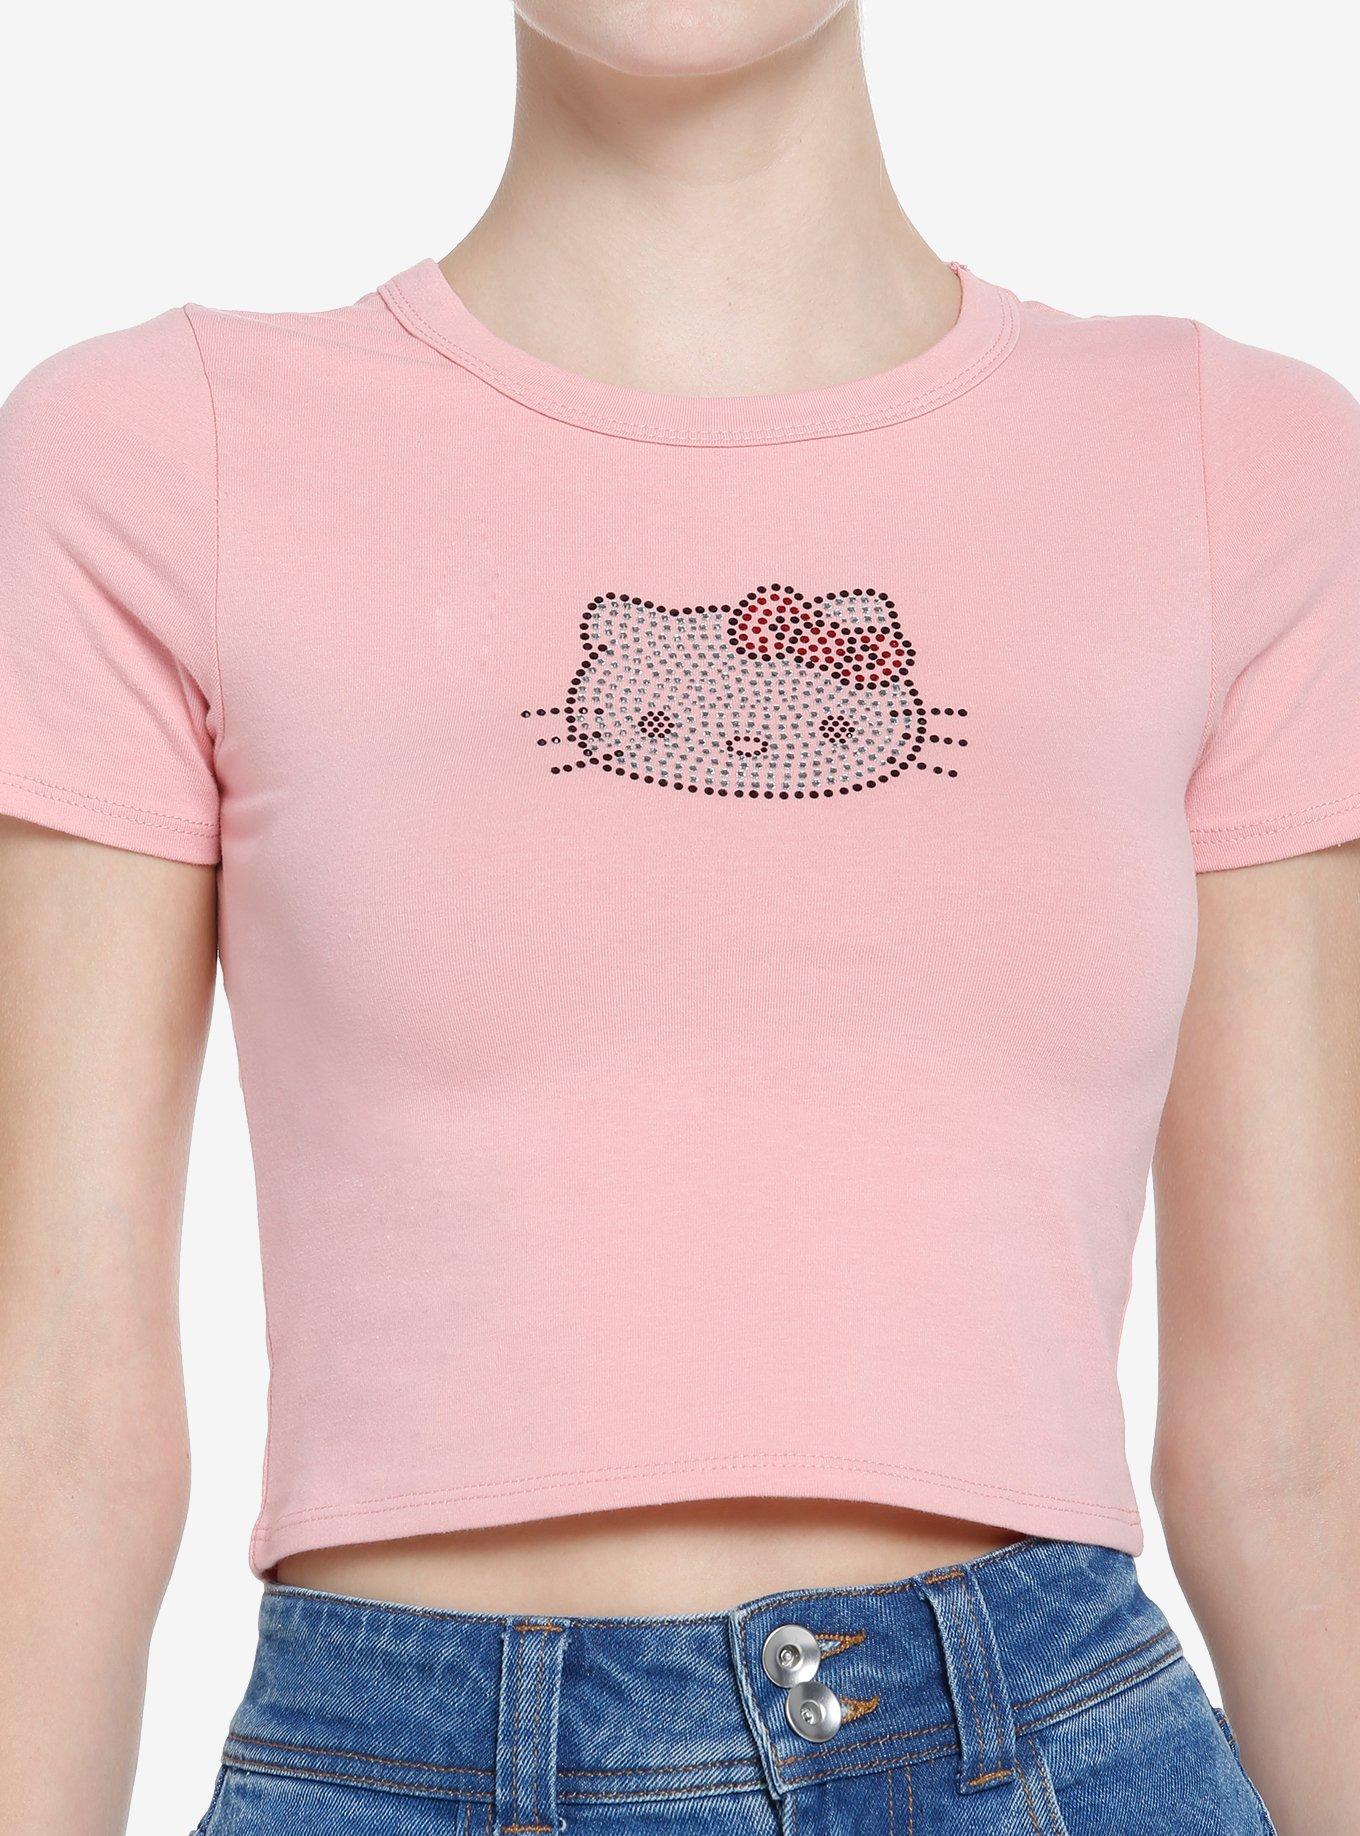 Hello Kitty Pink Rhinestone Girls Baby T-Shirt | Hot Topic